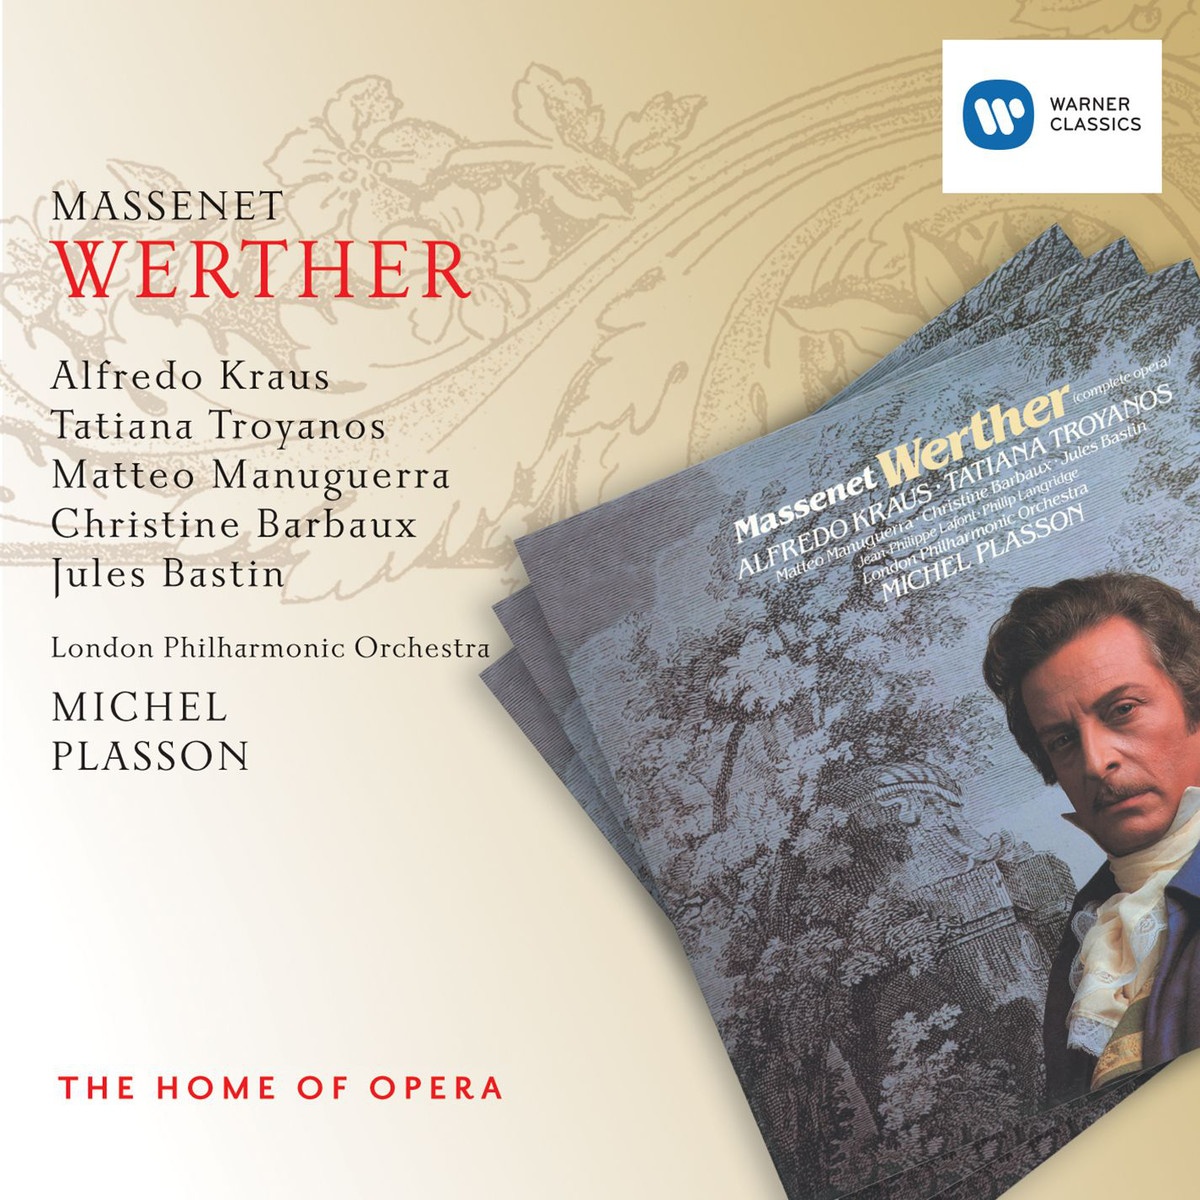 Werther 1997 Digital Remaster, DEUXIEME ACTE ACT TWO ZWEITER AKT: Pre lude Orchestre